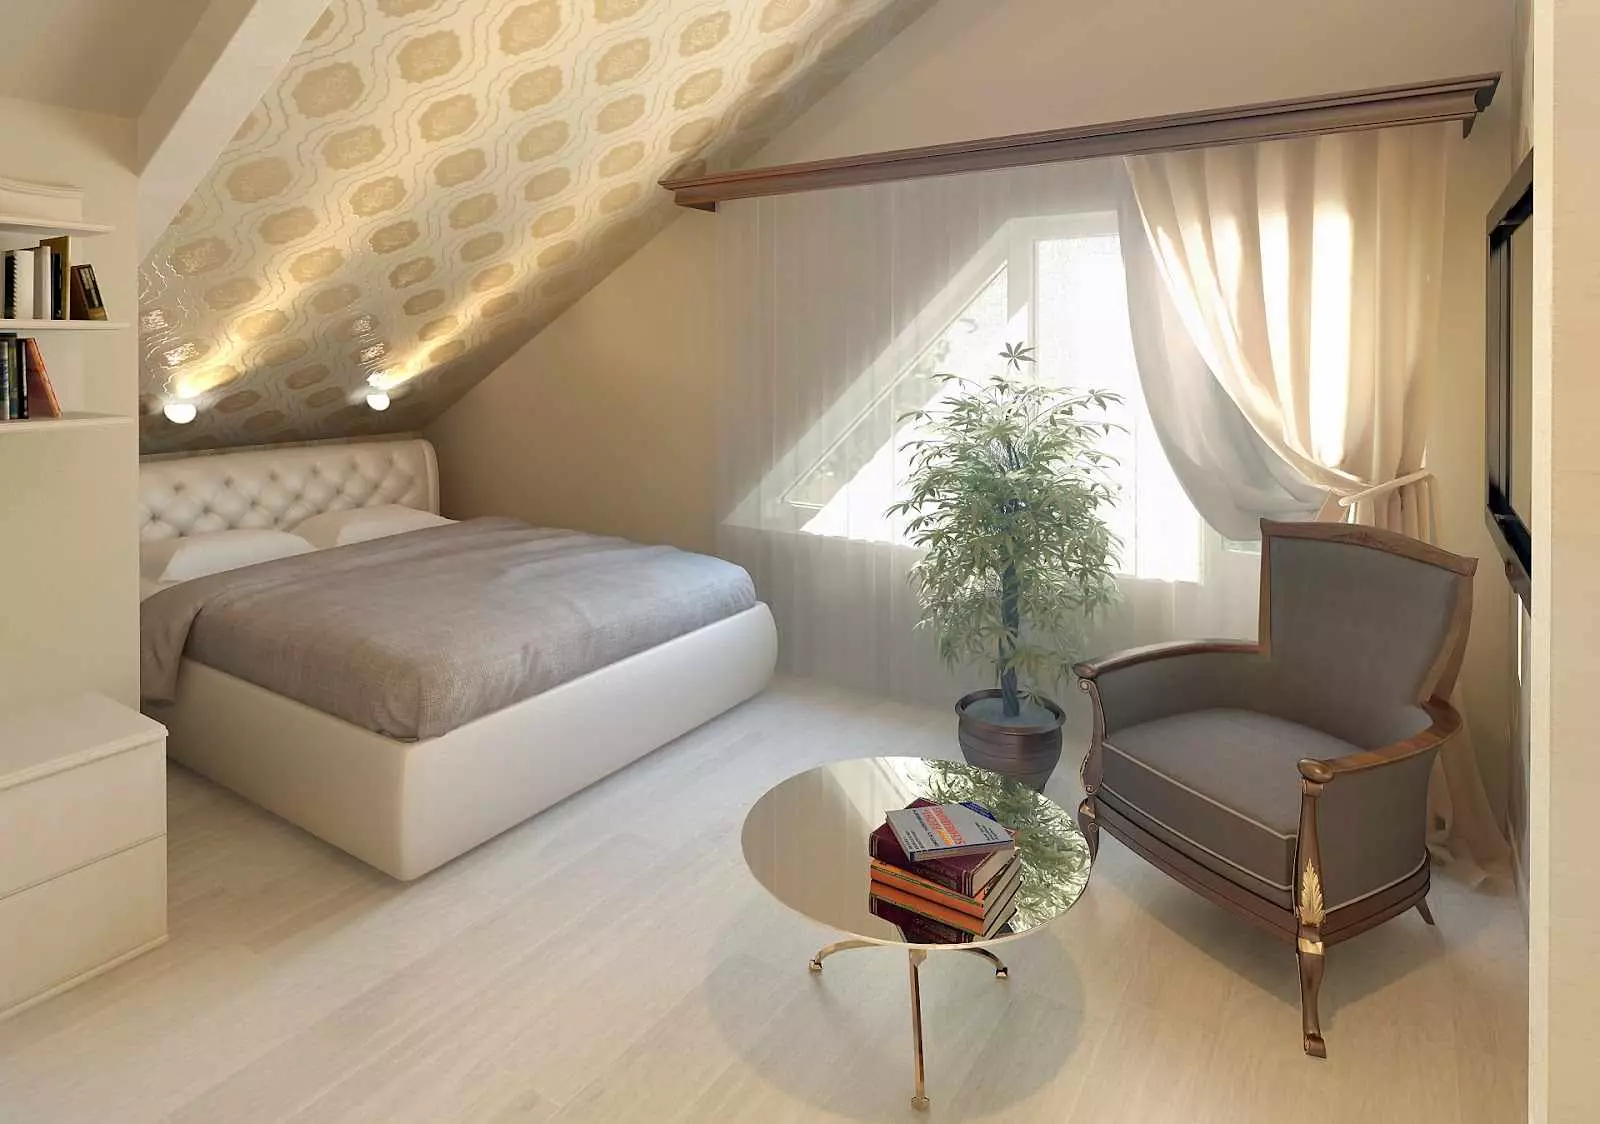 小卧室（166张照片）：室内设计的小房间的设计。如何提供和装备小卧室？有趣的想法 9841_29